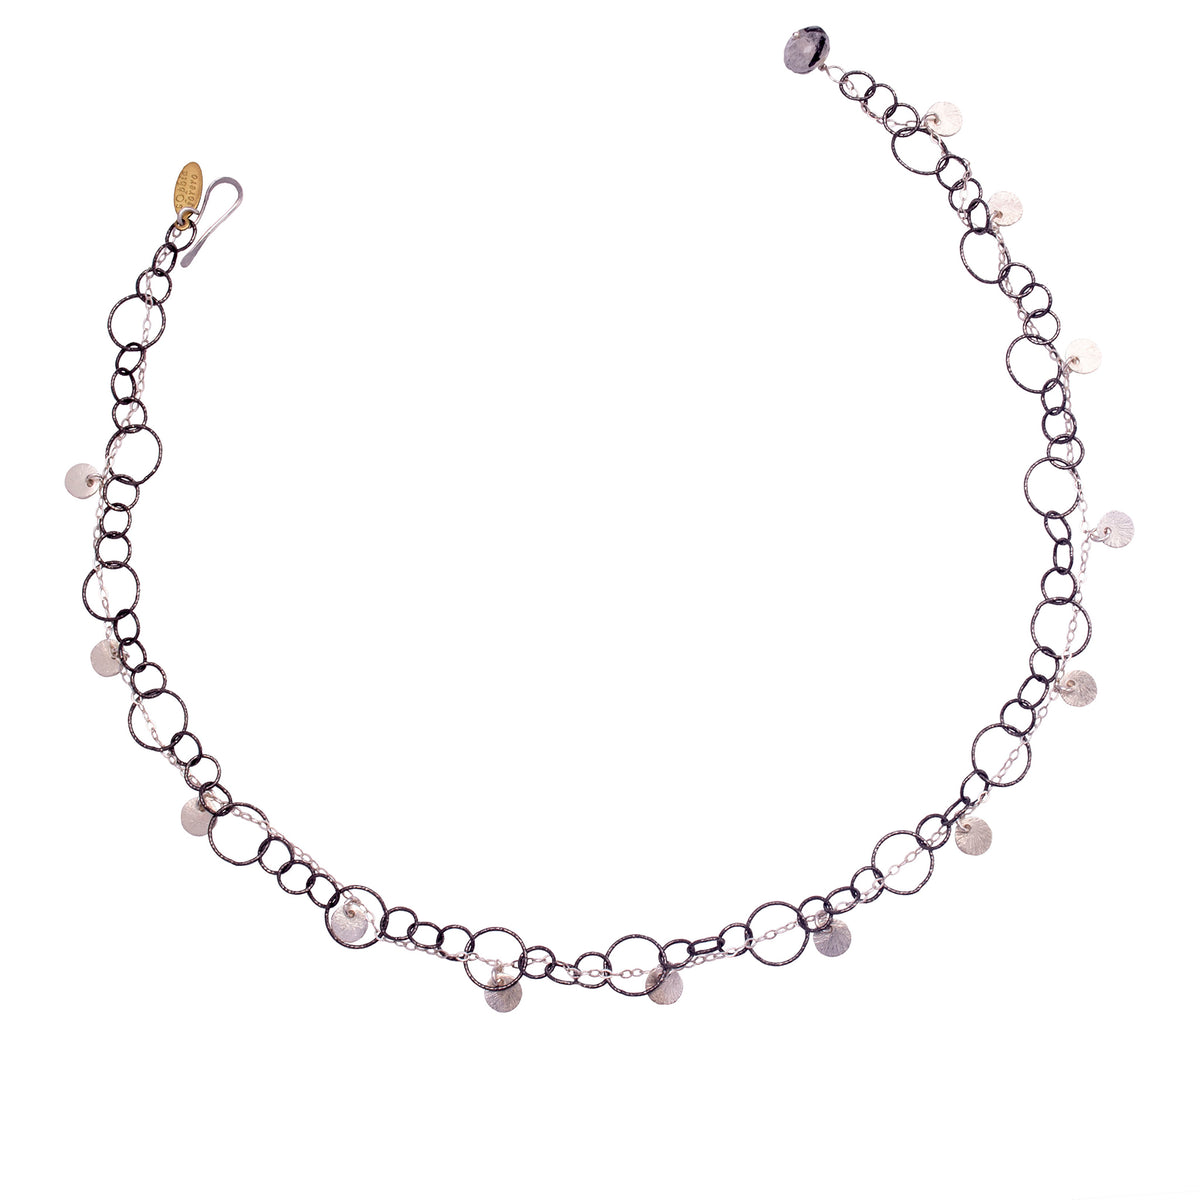 Fire & Ice Sterling Silver Bracelet/Necklace (Ice)